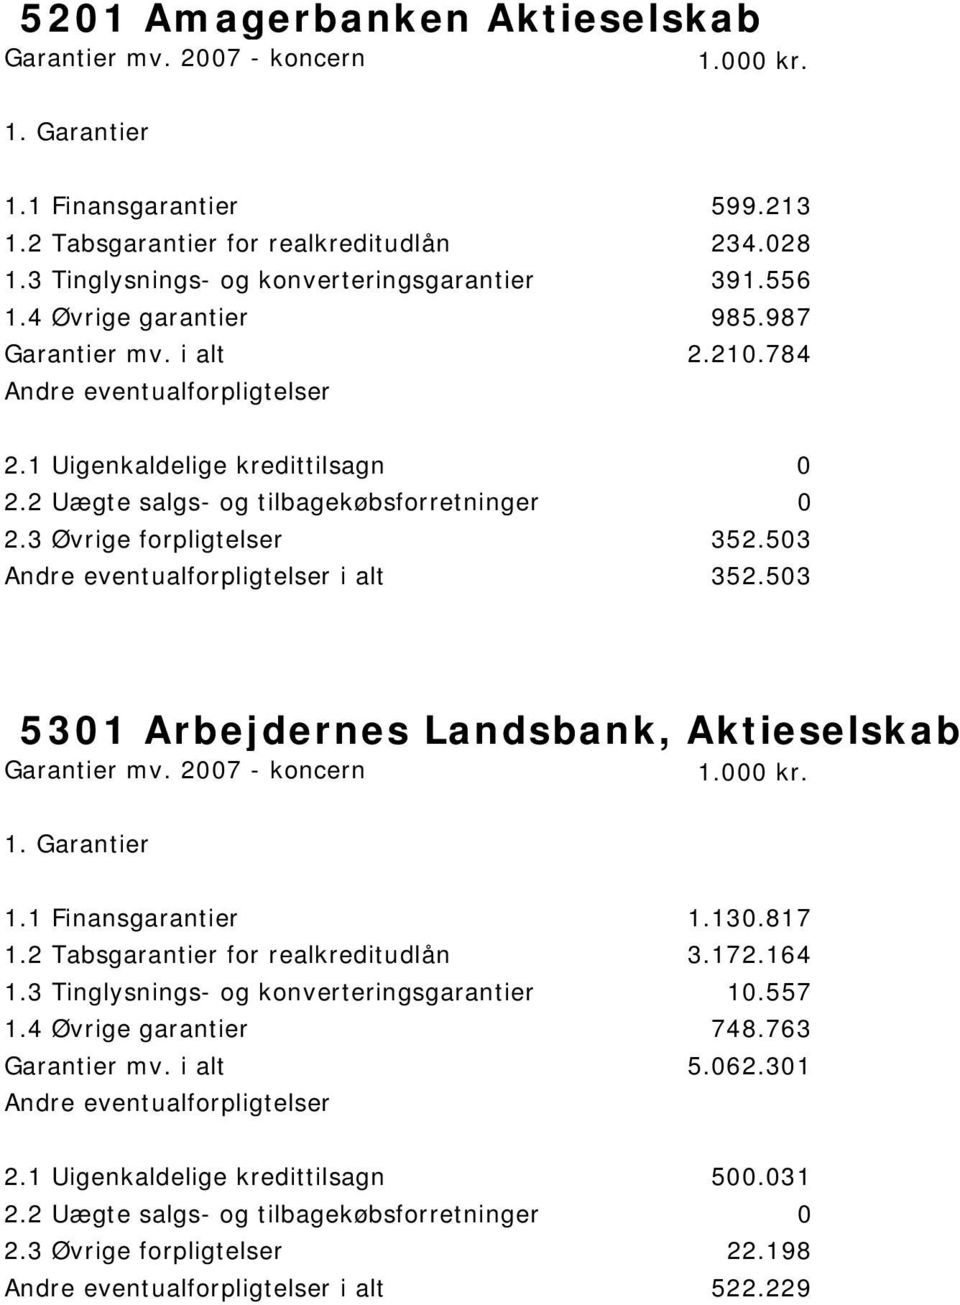 503 i alt 352.503 5301 Arbejdernes Landsbank, Aktieselskab 1.1 Finansgarantier 1.130.817 1.2 Tabsgarantier for realkreditudlån 3.172.164 1.